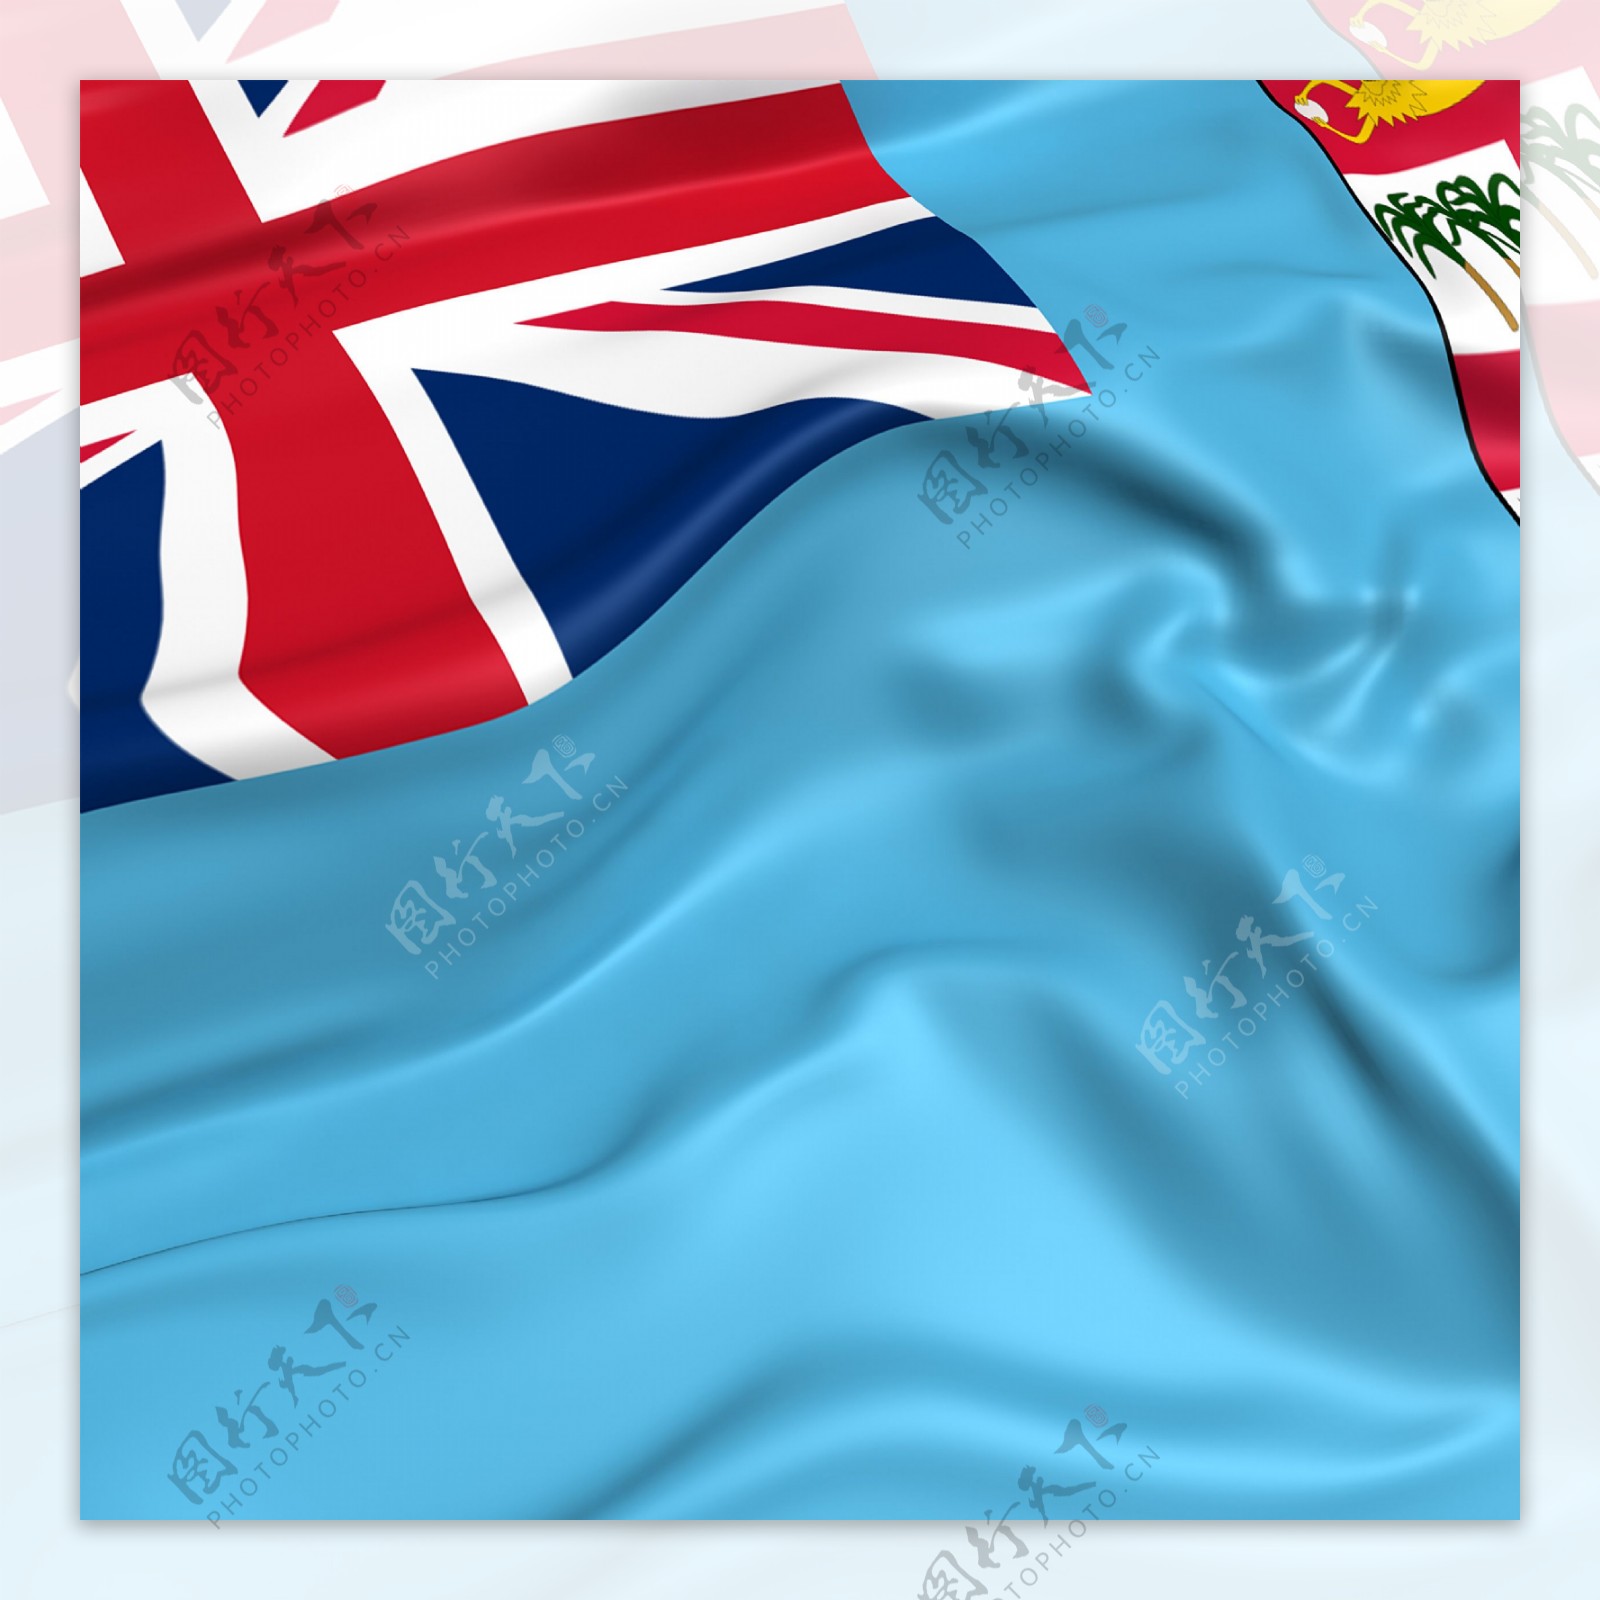 斐济国旗